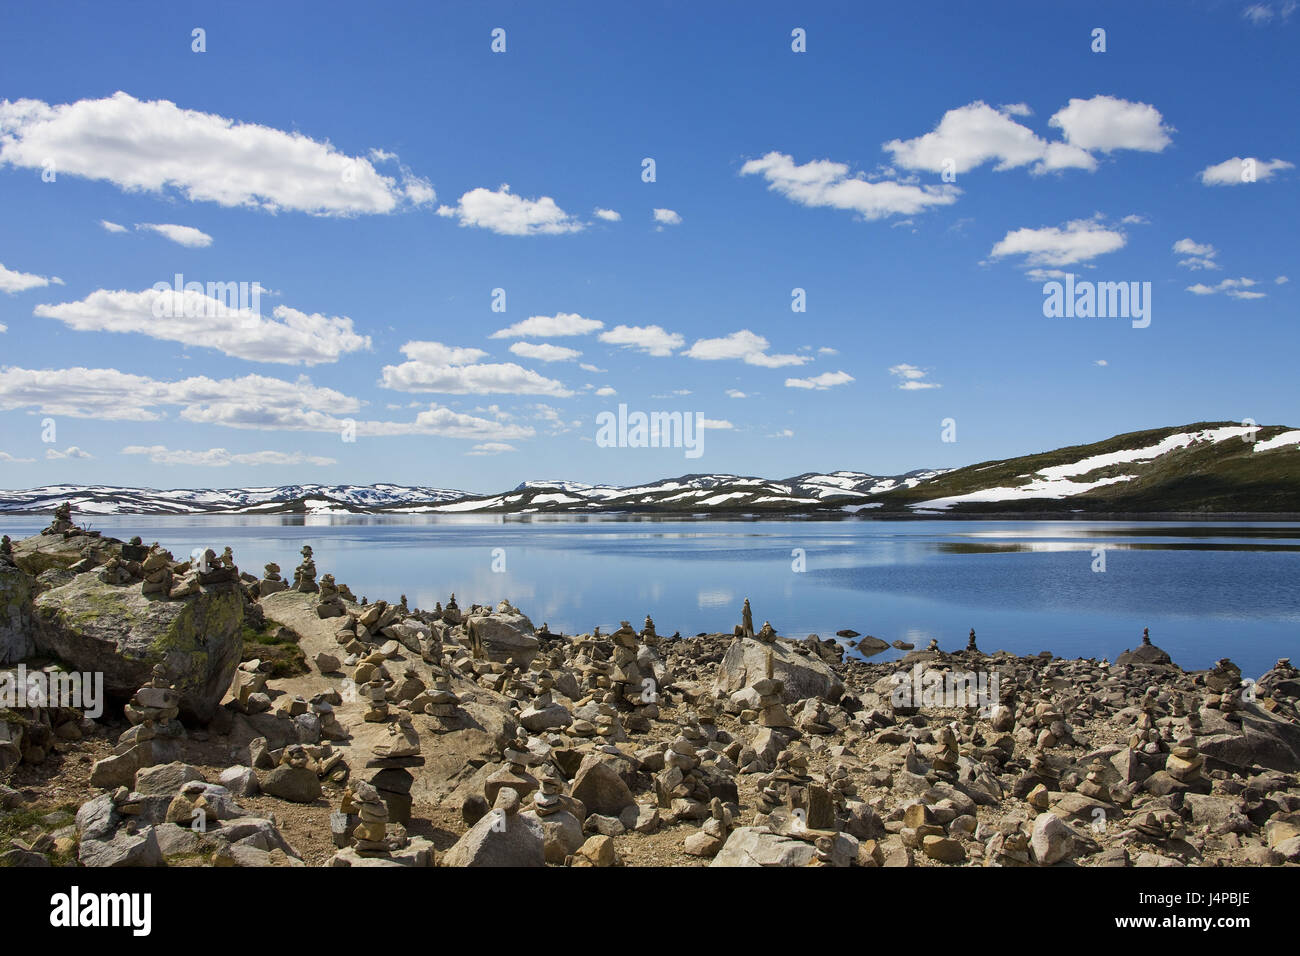 Norway, Hardangerjokulen, lake, shore, stone little man, Stock Photo